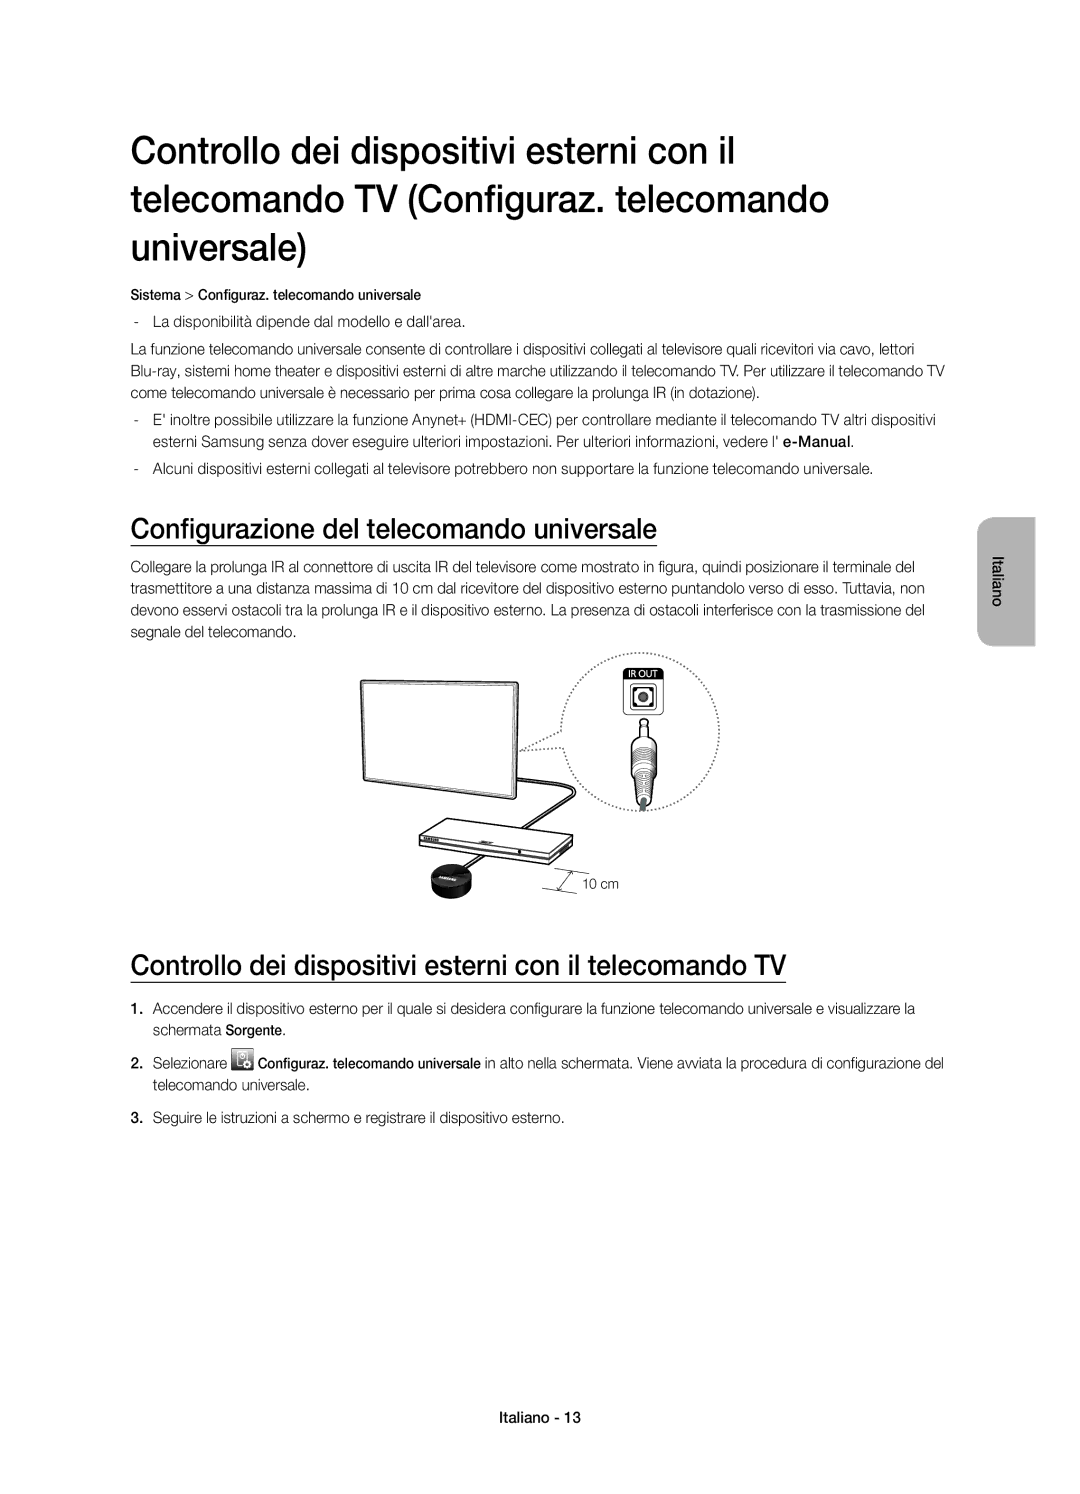 Samsung UE48H5510SSXZG Configurazione del telecomando universale, Controllo dei dispositivi esterni con il telecomando TV 